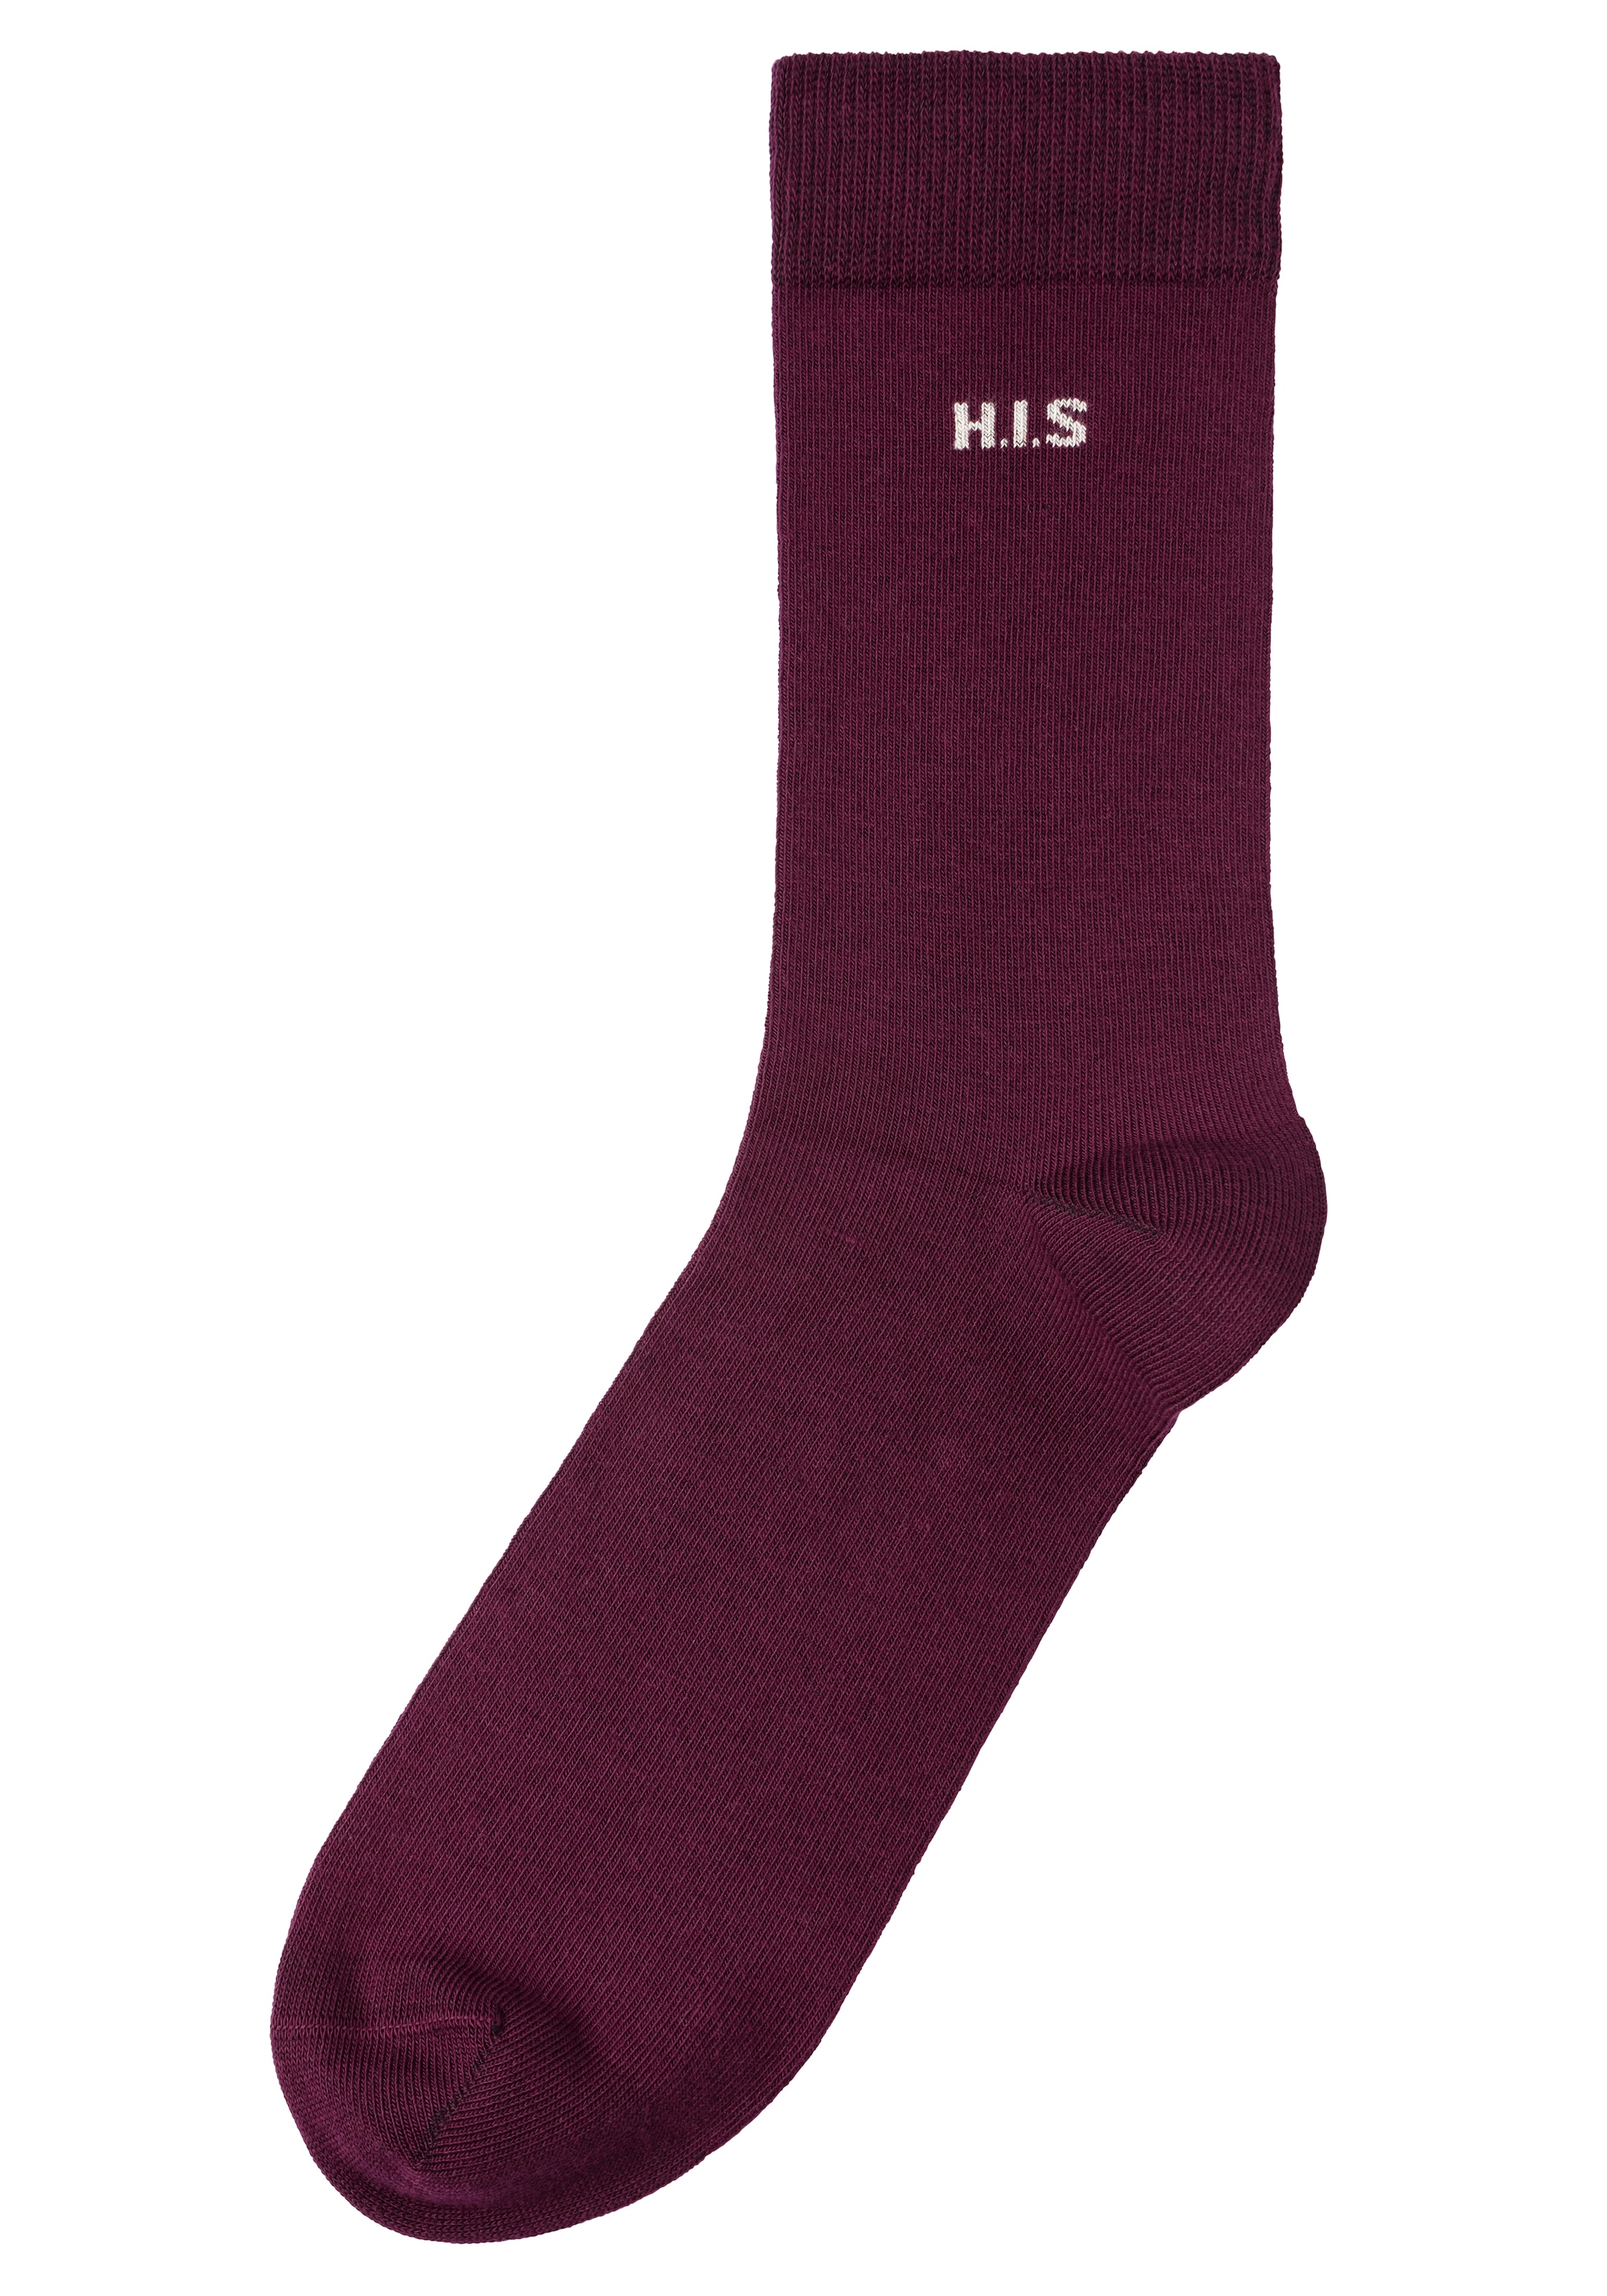 Innenbund Socken, farbigem mit kaufen H.I.S Paar), (10 im Online-Shop